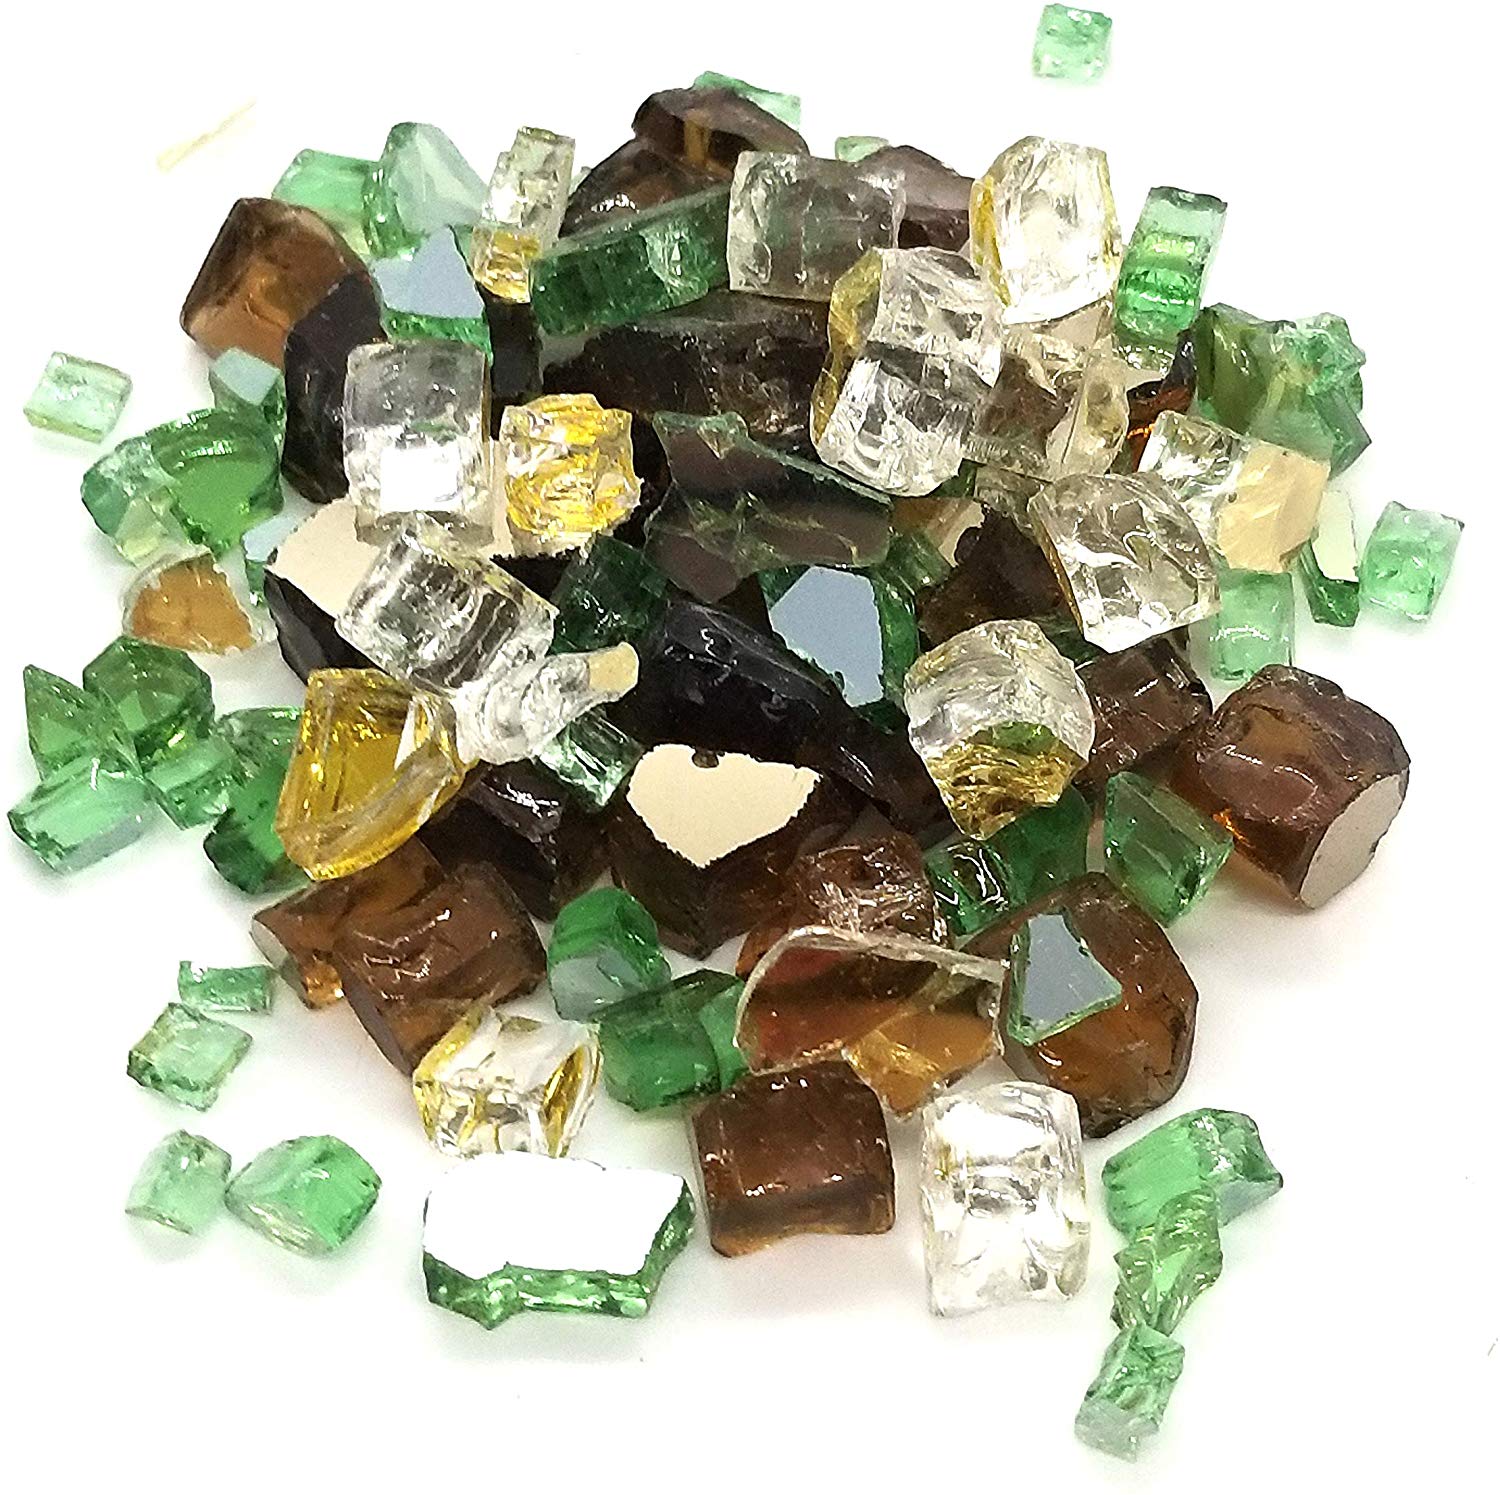 Irish Blend Green, Amber & Gold - Fire Glass 1/2" Premium Tempered Reflective Fireglass